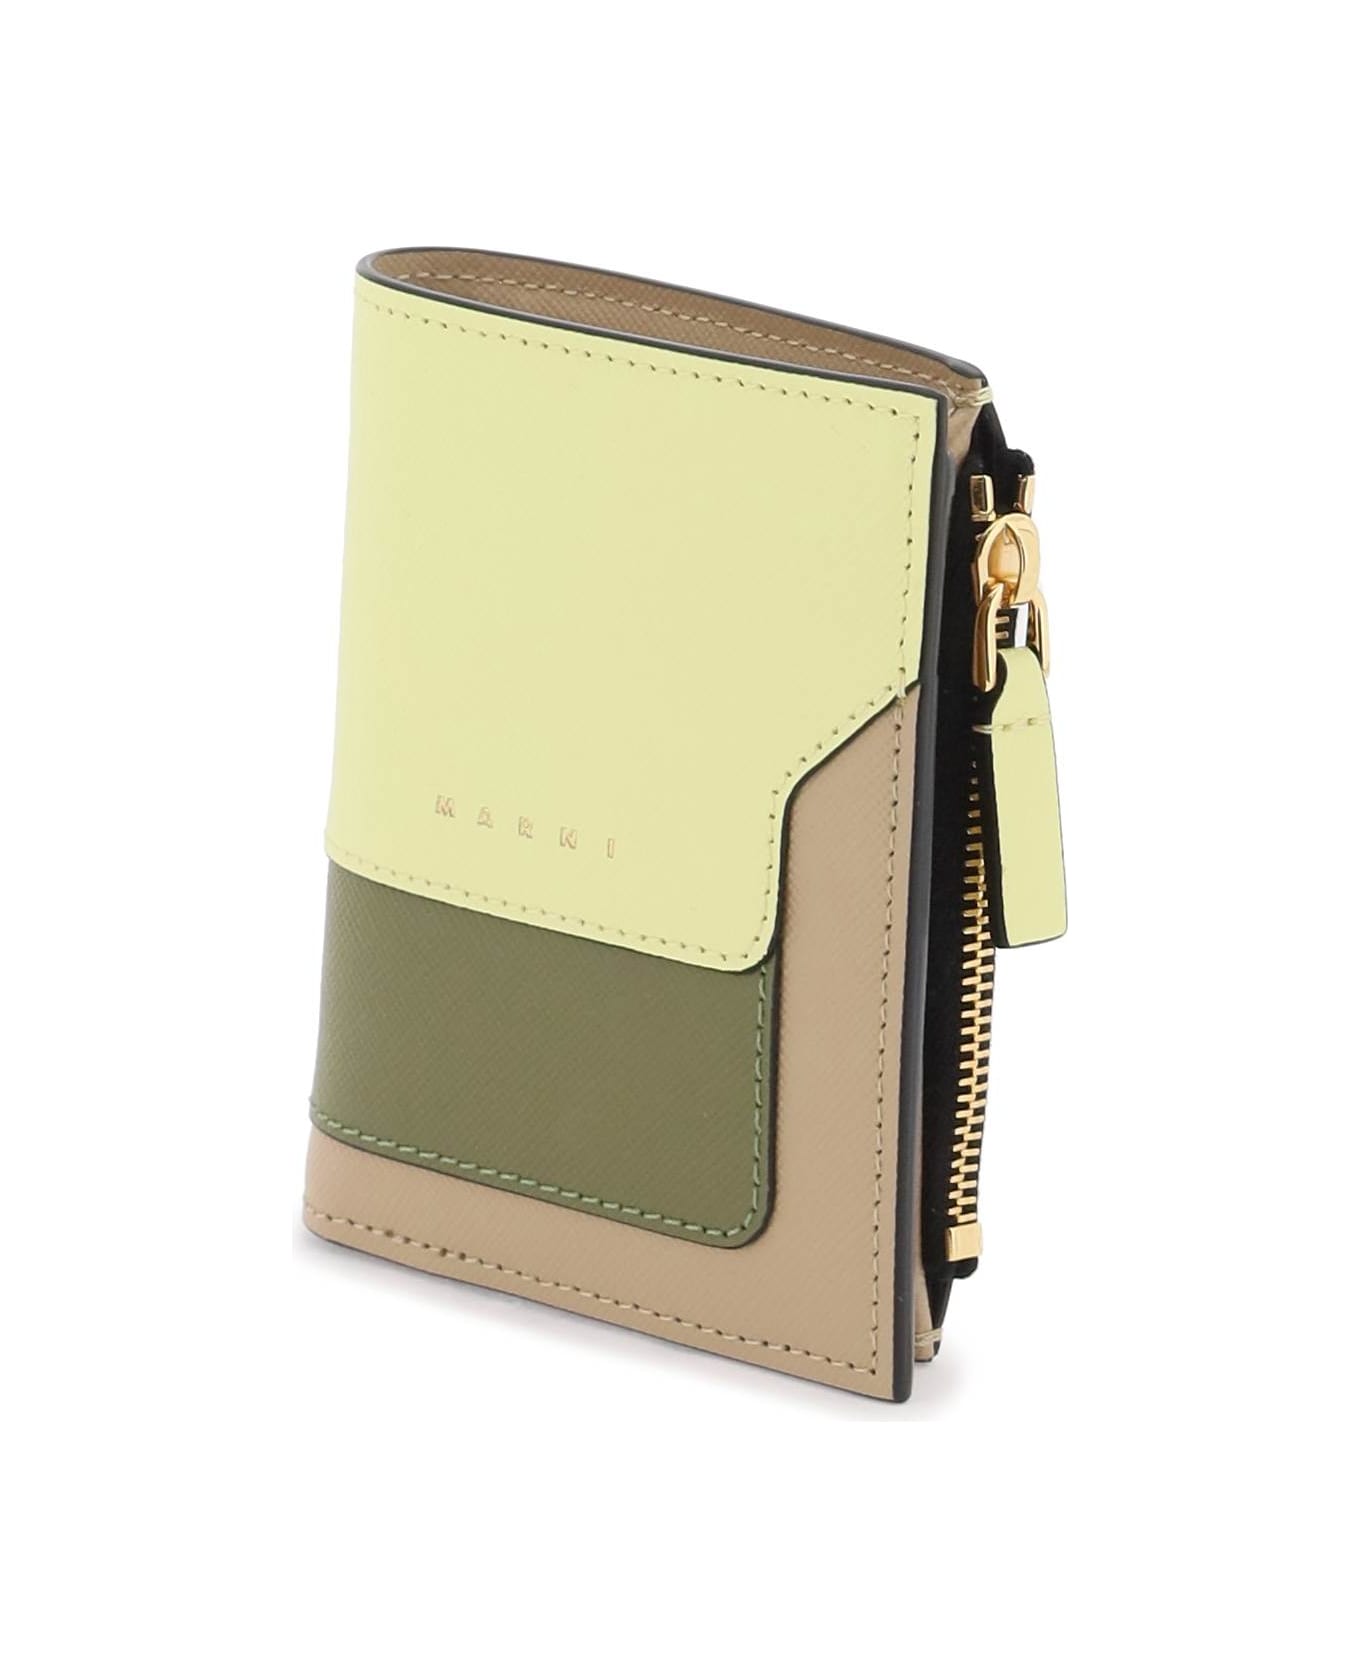 Marni Multicolored Saffiano Leather Bi-fold Wallet - VANILLA OLIVE SOFT BEIGE (Beige)